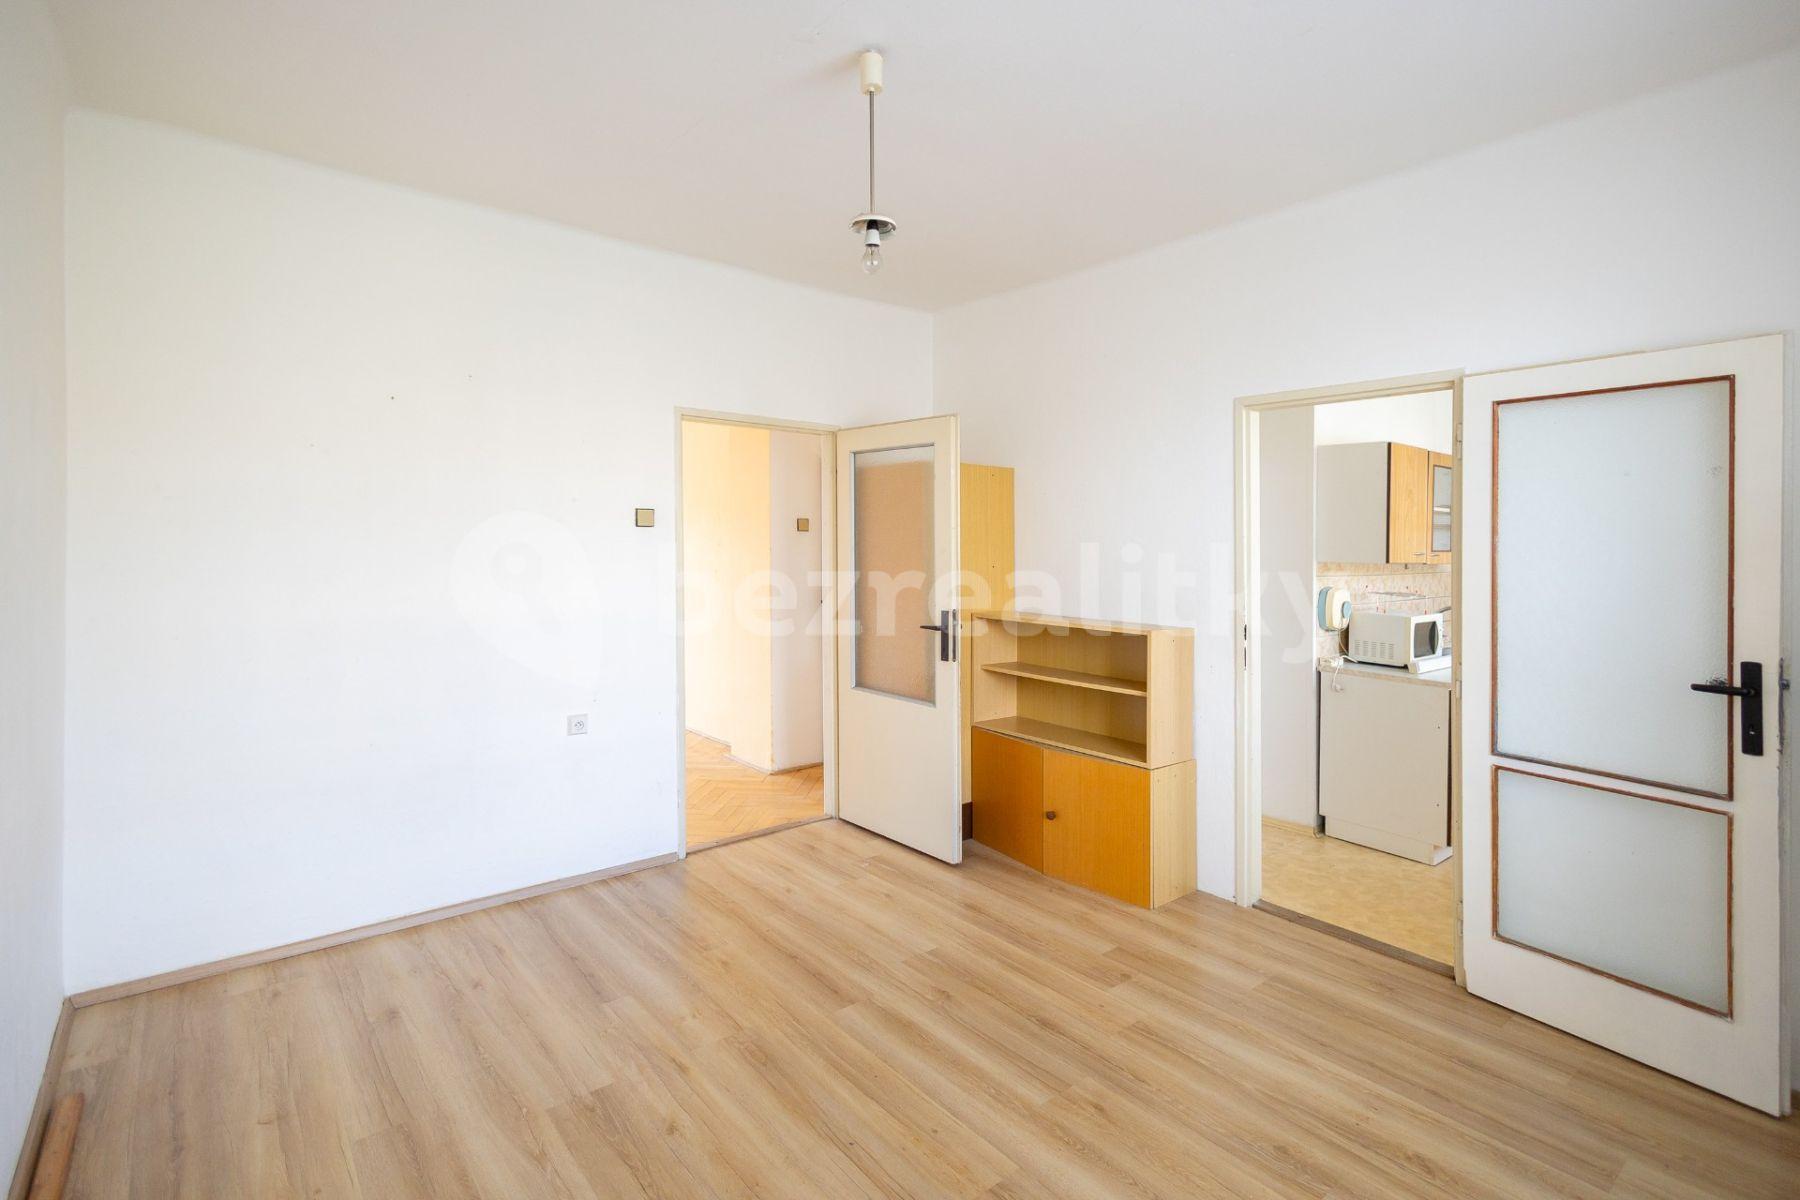 2 bedroom flat for sale, 54 m², Dělnické nám., Třebíč, Vysočina Region